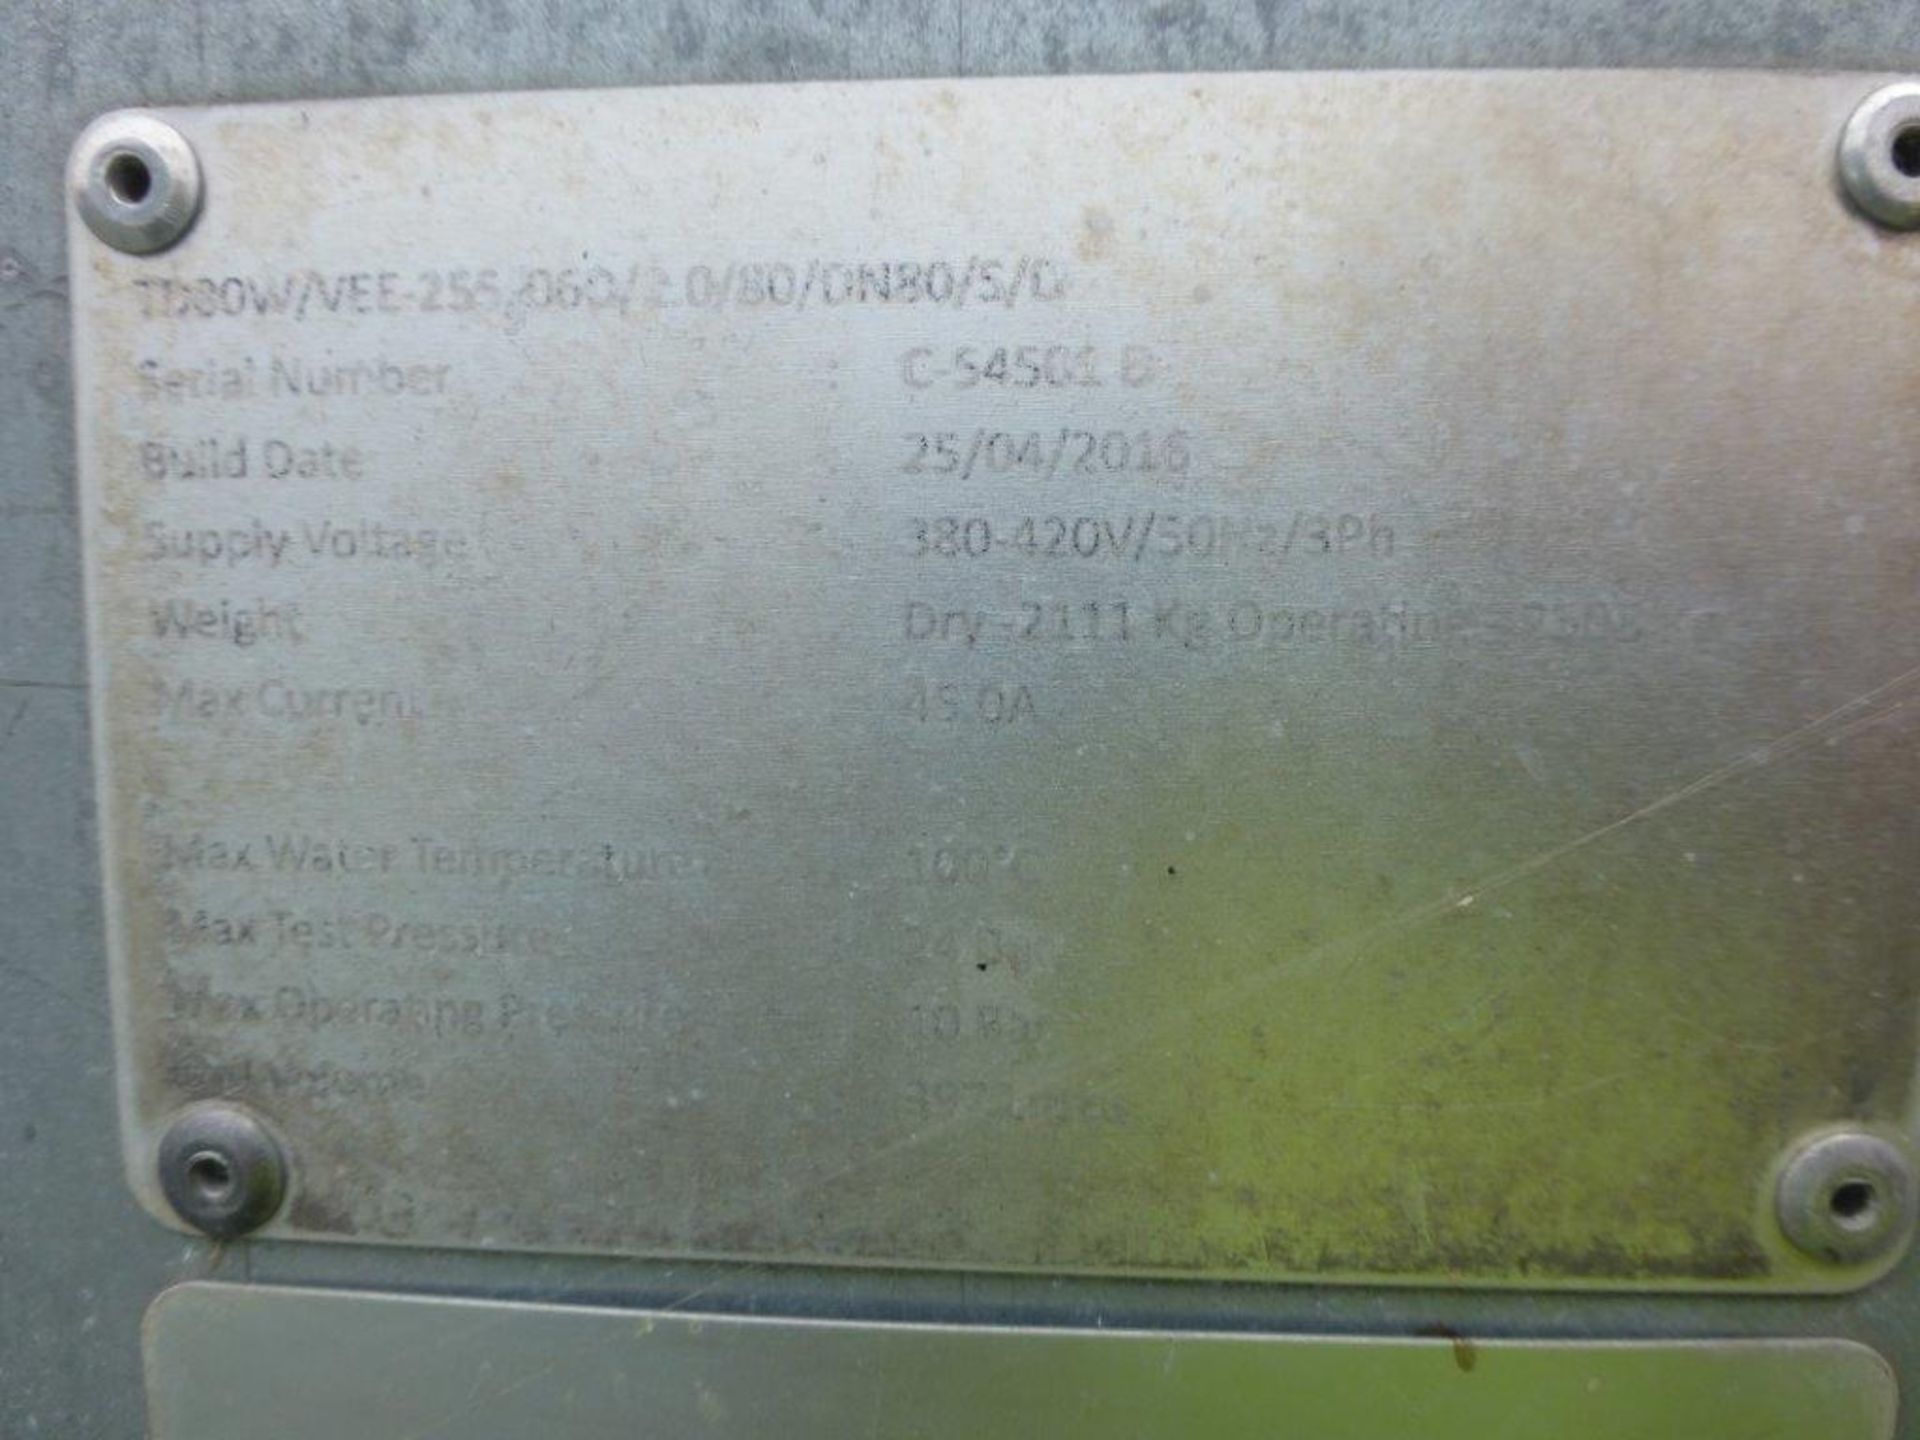 Swegon TD80W/VEE -255/06D/2.0/80/2xDN80/S/D 10 fan Vee configuration dryer/cooler, serial No C54501D - Image 5 of 5